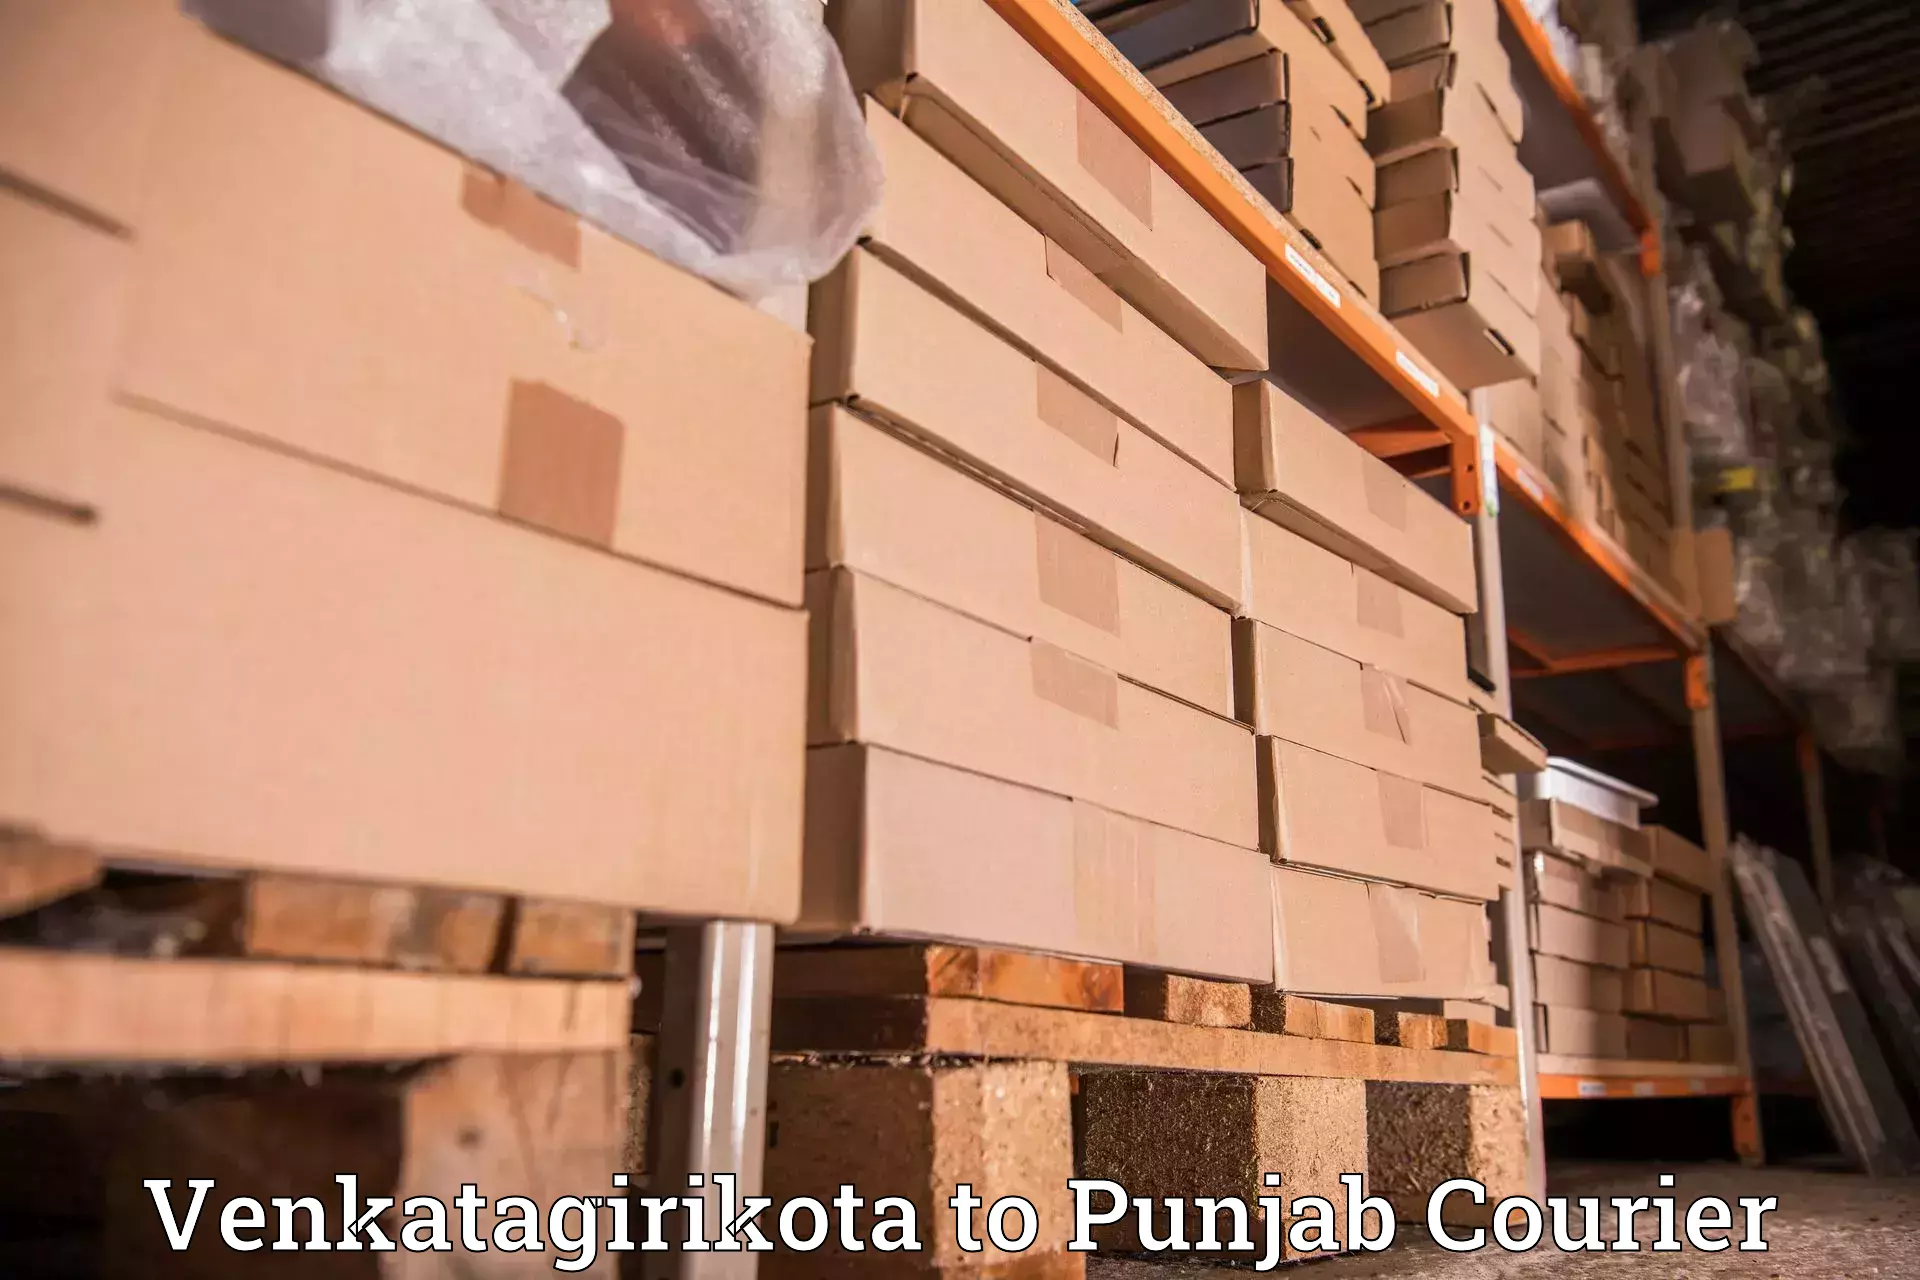 Professional courier services Venkatagirikota to Amritsar